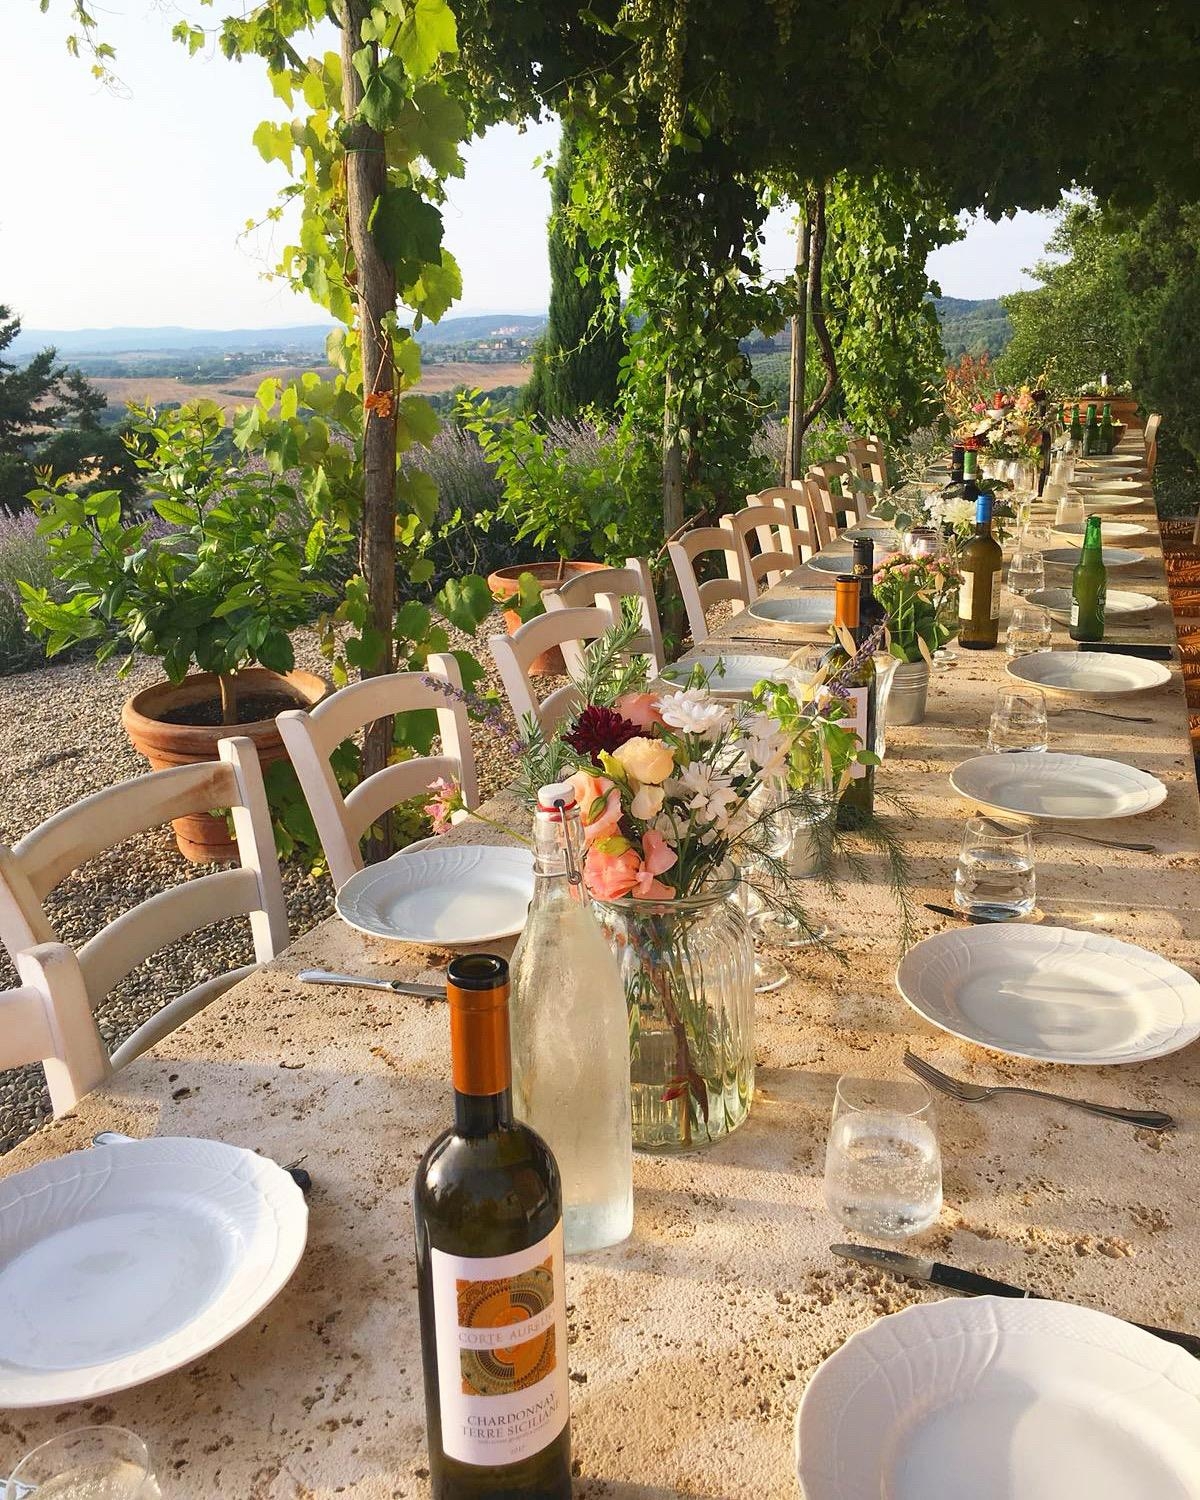 Schönste #Hochzeit in #bellaitalia #esstisch #gedecktertisch #feier #fest #urlaub #italien #toscana #toskana